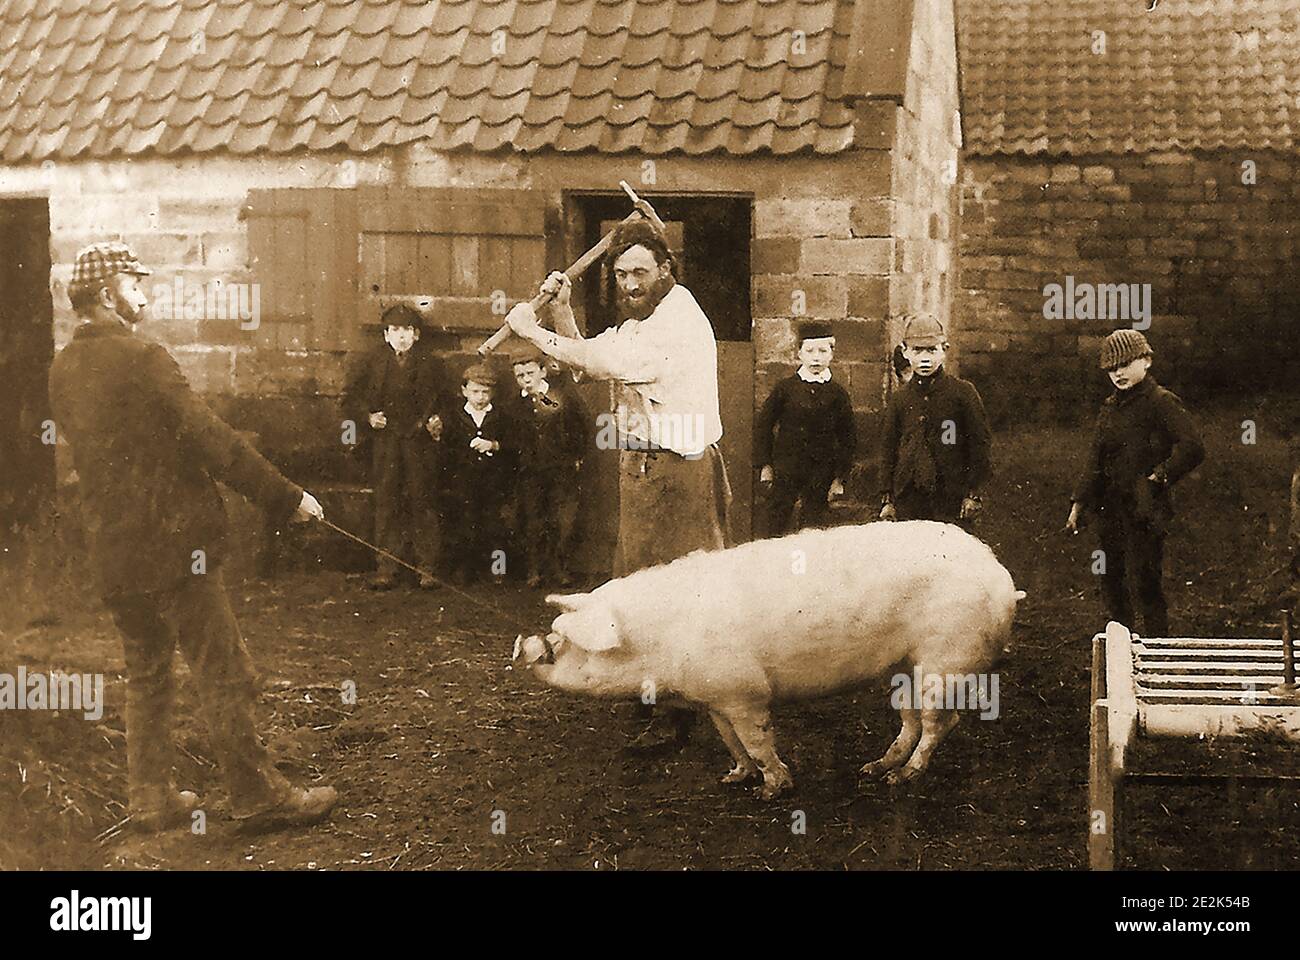 Photo d'un porc tué dans un village près de Whitby, dans le Yorkshire, au Royaume-Uni, vers 1900. Bien que guy pour les yeux modernes, c'était autrefois une vue commune dans les jours avant les abattoirs modernes. Il est intéressant de voir que les enfants sont plus intéressés par le photographe et son appareil-photo que le meurtre du cochon qui a probablement vu beaucoup de fois auparavant. Banque D'Images